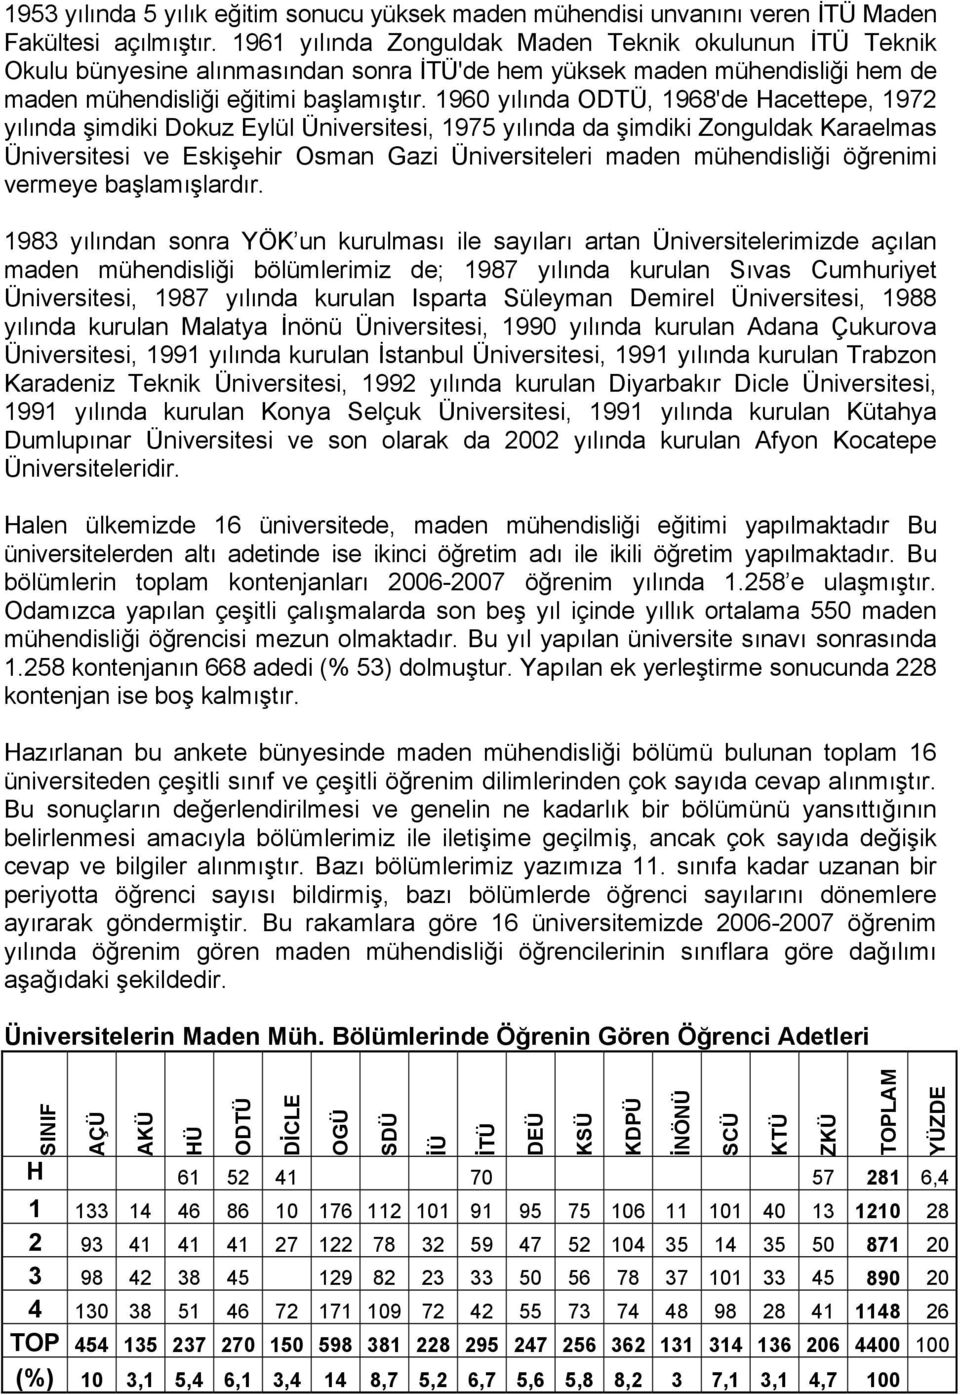 1960 yılında, 1968'de Hacettepe, 1972 yılında şimdiki Dokuz Eylül Üniversitesi, 1975 yılında da şimdiki Zonguldak Karaelmas Üniversitesi ve Eskişehir Osman Gazi Üniversiteleri maden mühendisliği